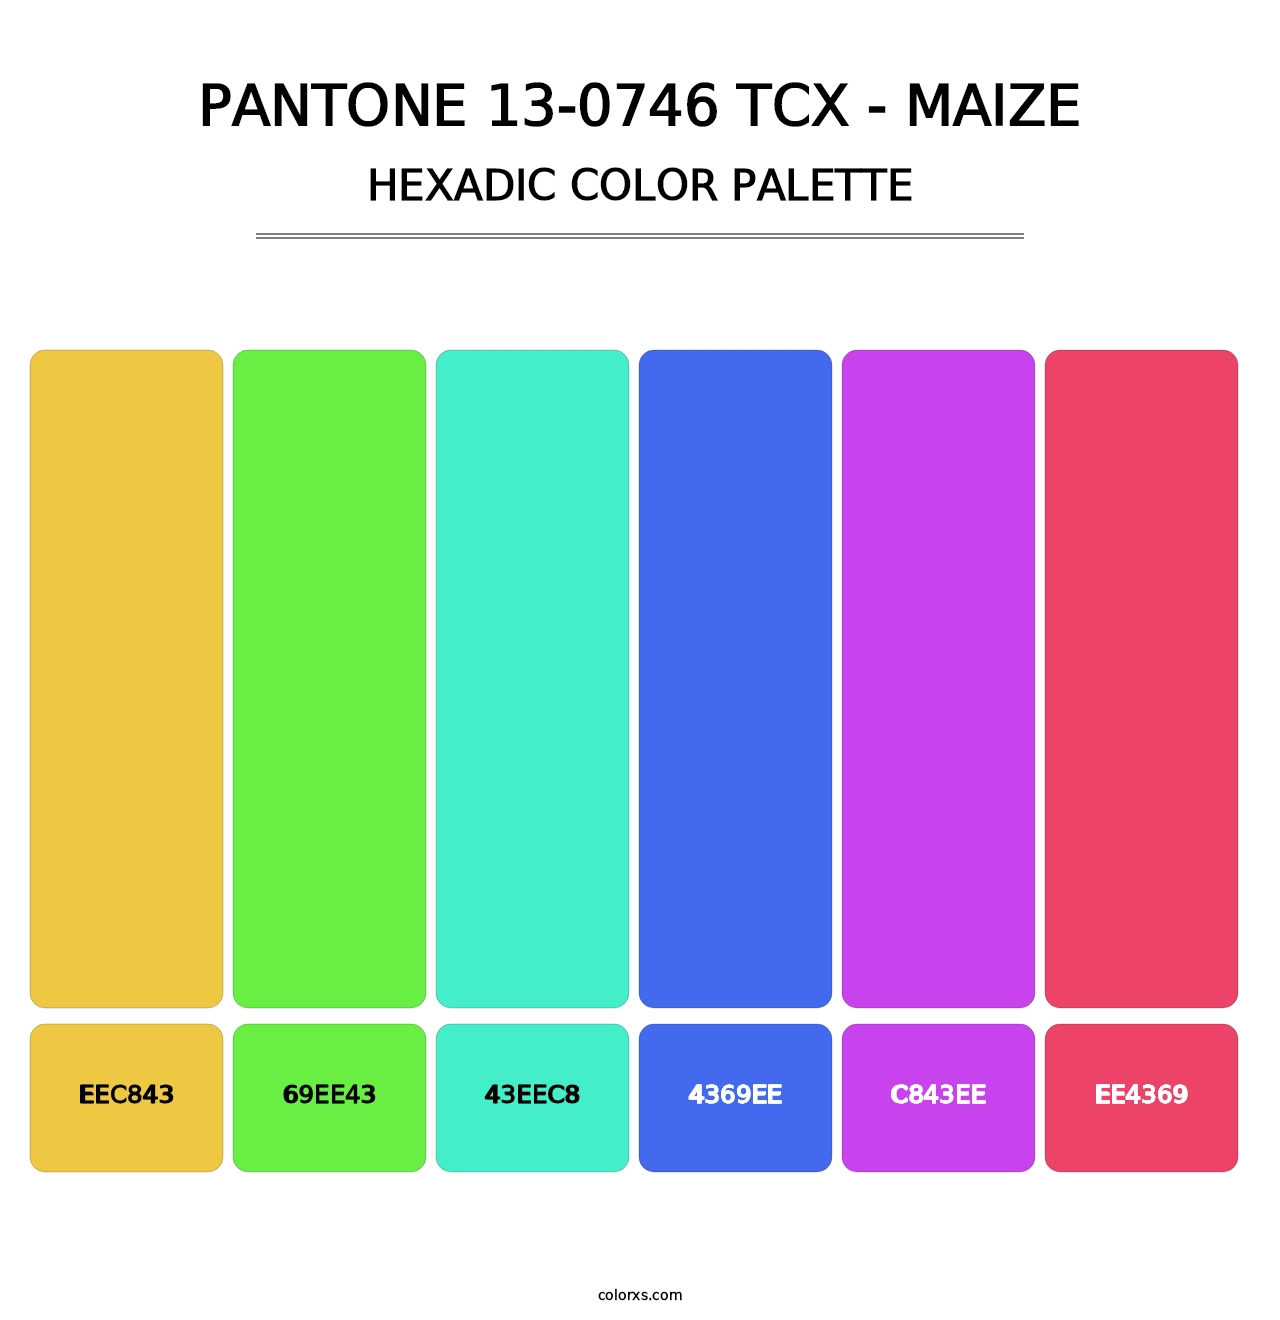 PANTONE 13-0746 TCX - Maize - Hexadic Color Palette